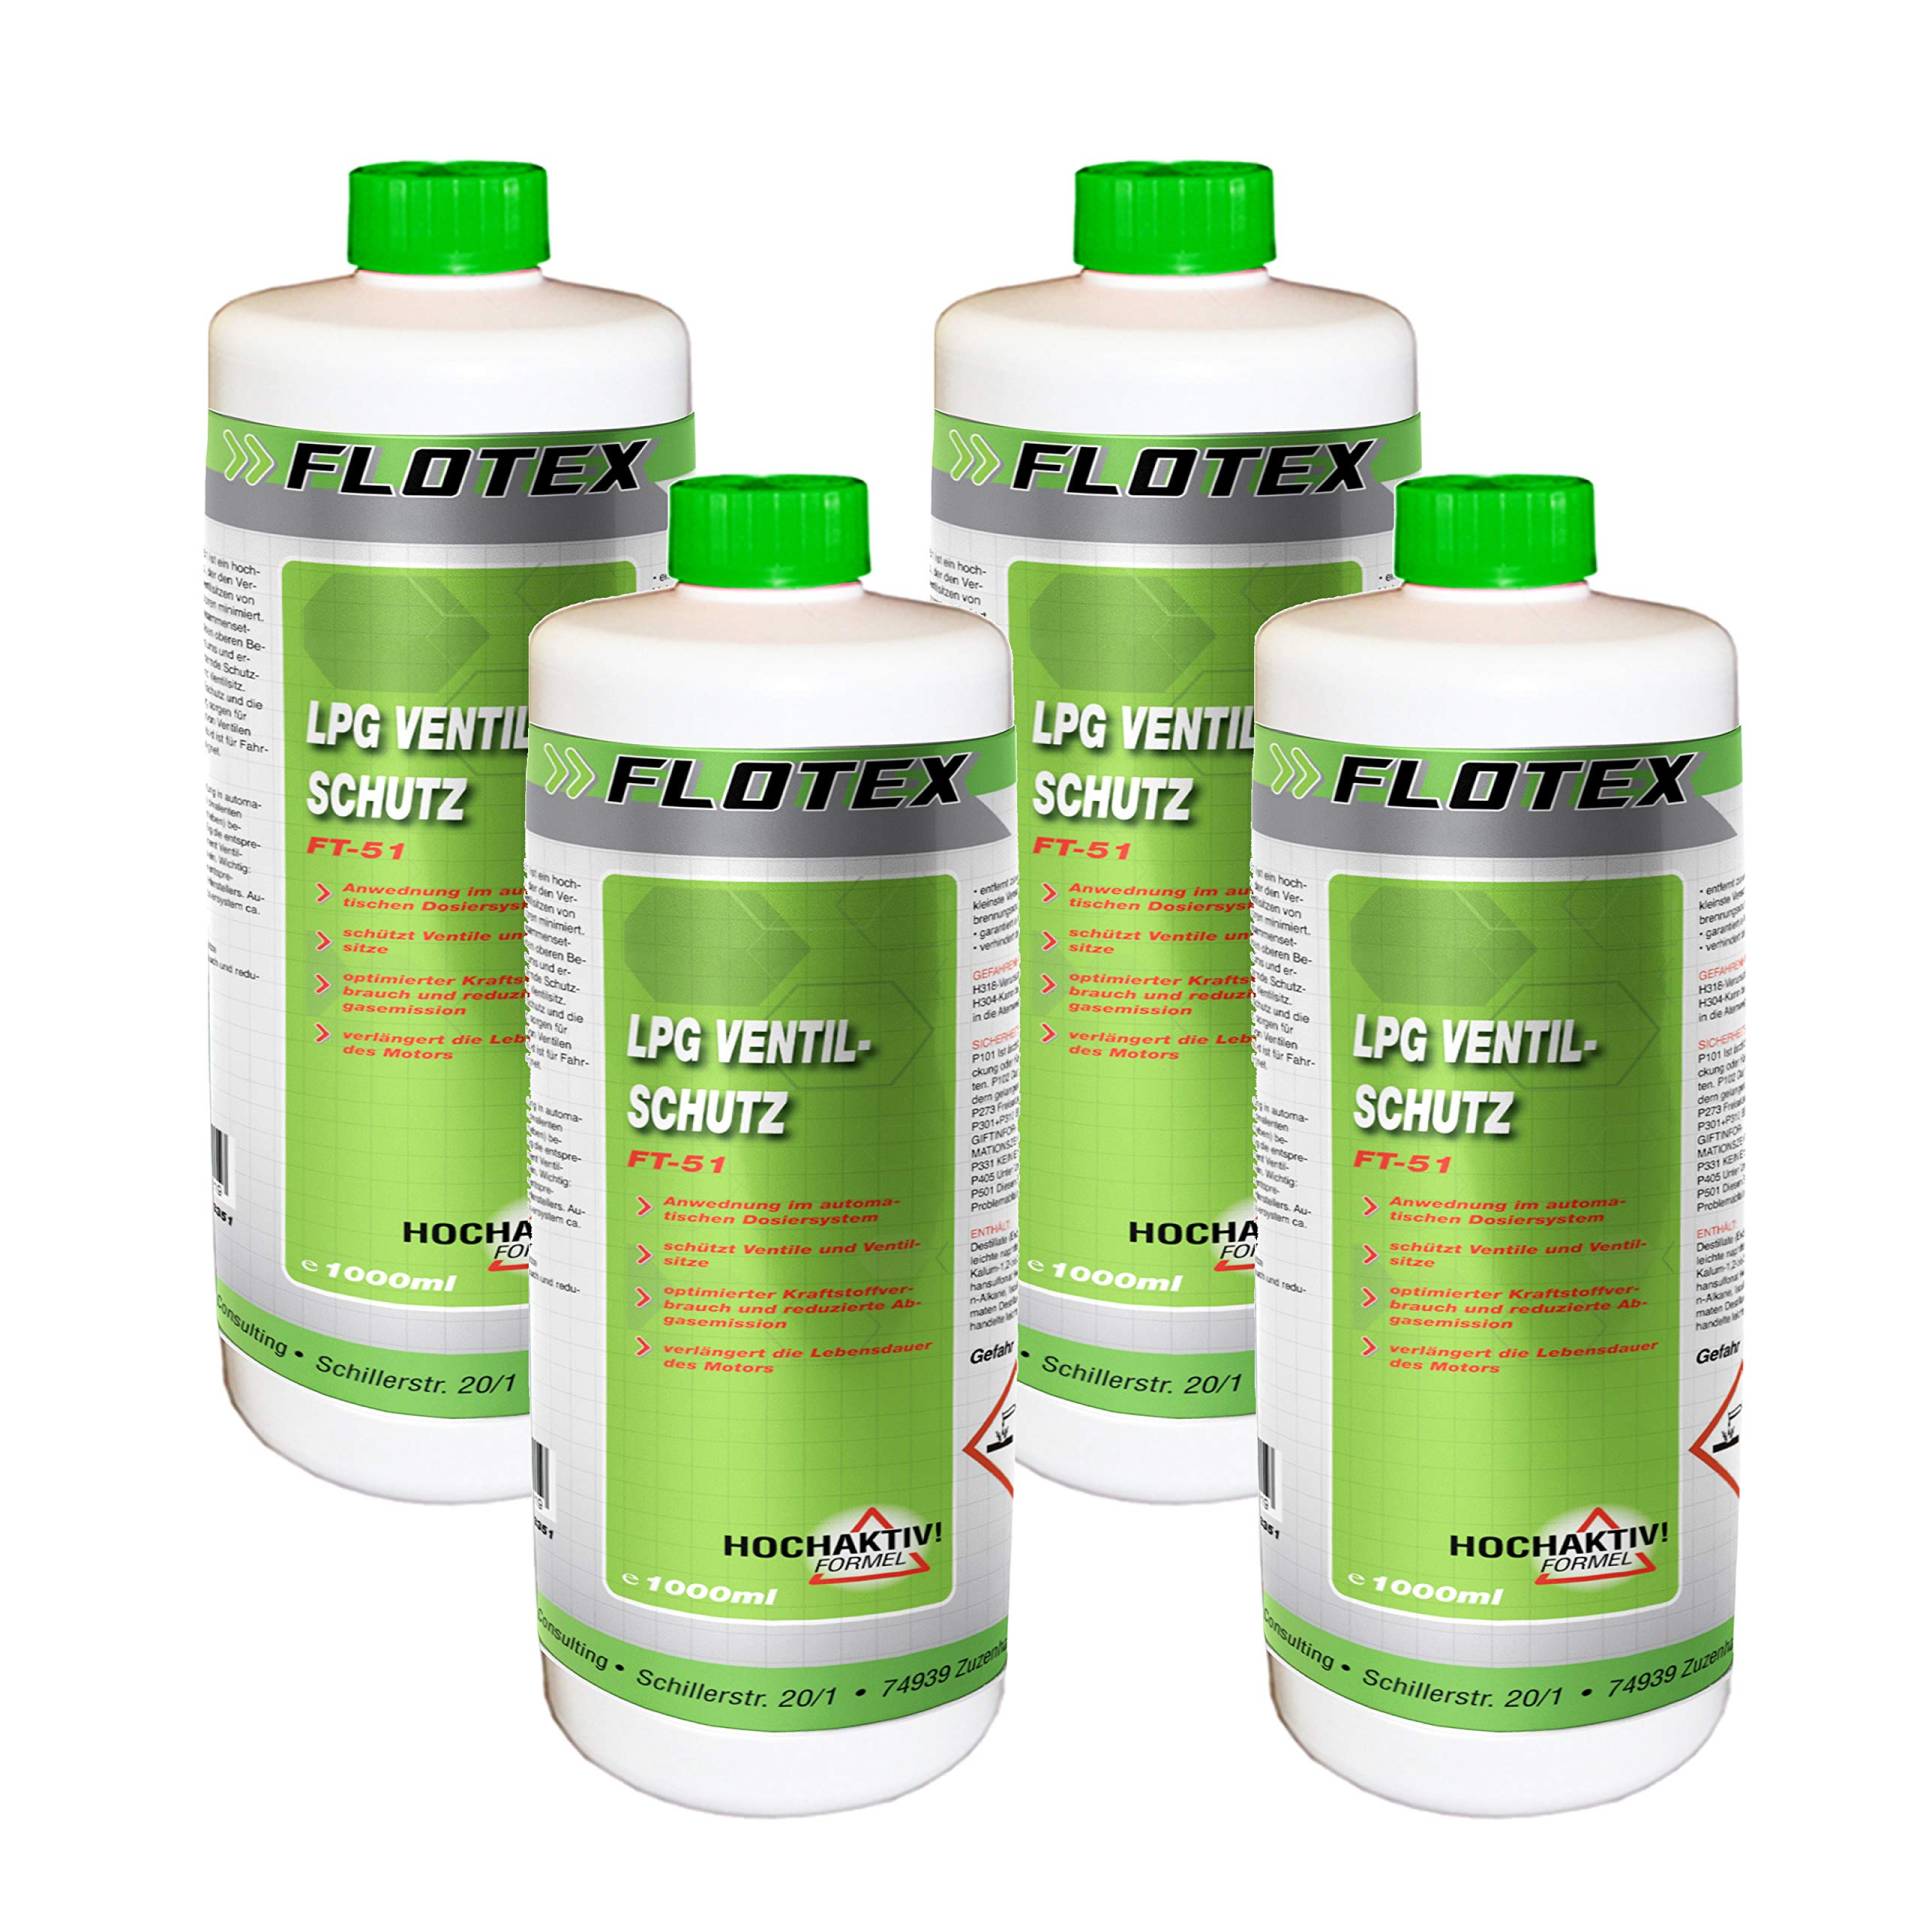 Flotex Permanent LPG Ventilschutz, 4 x 1L Additiv Gas Ventil Schutz von Flotex